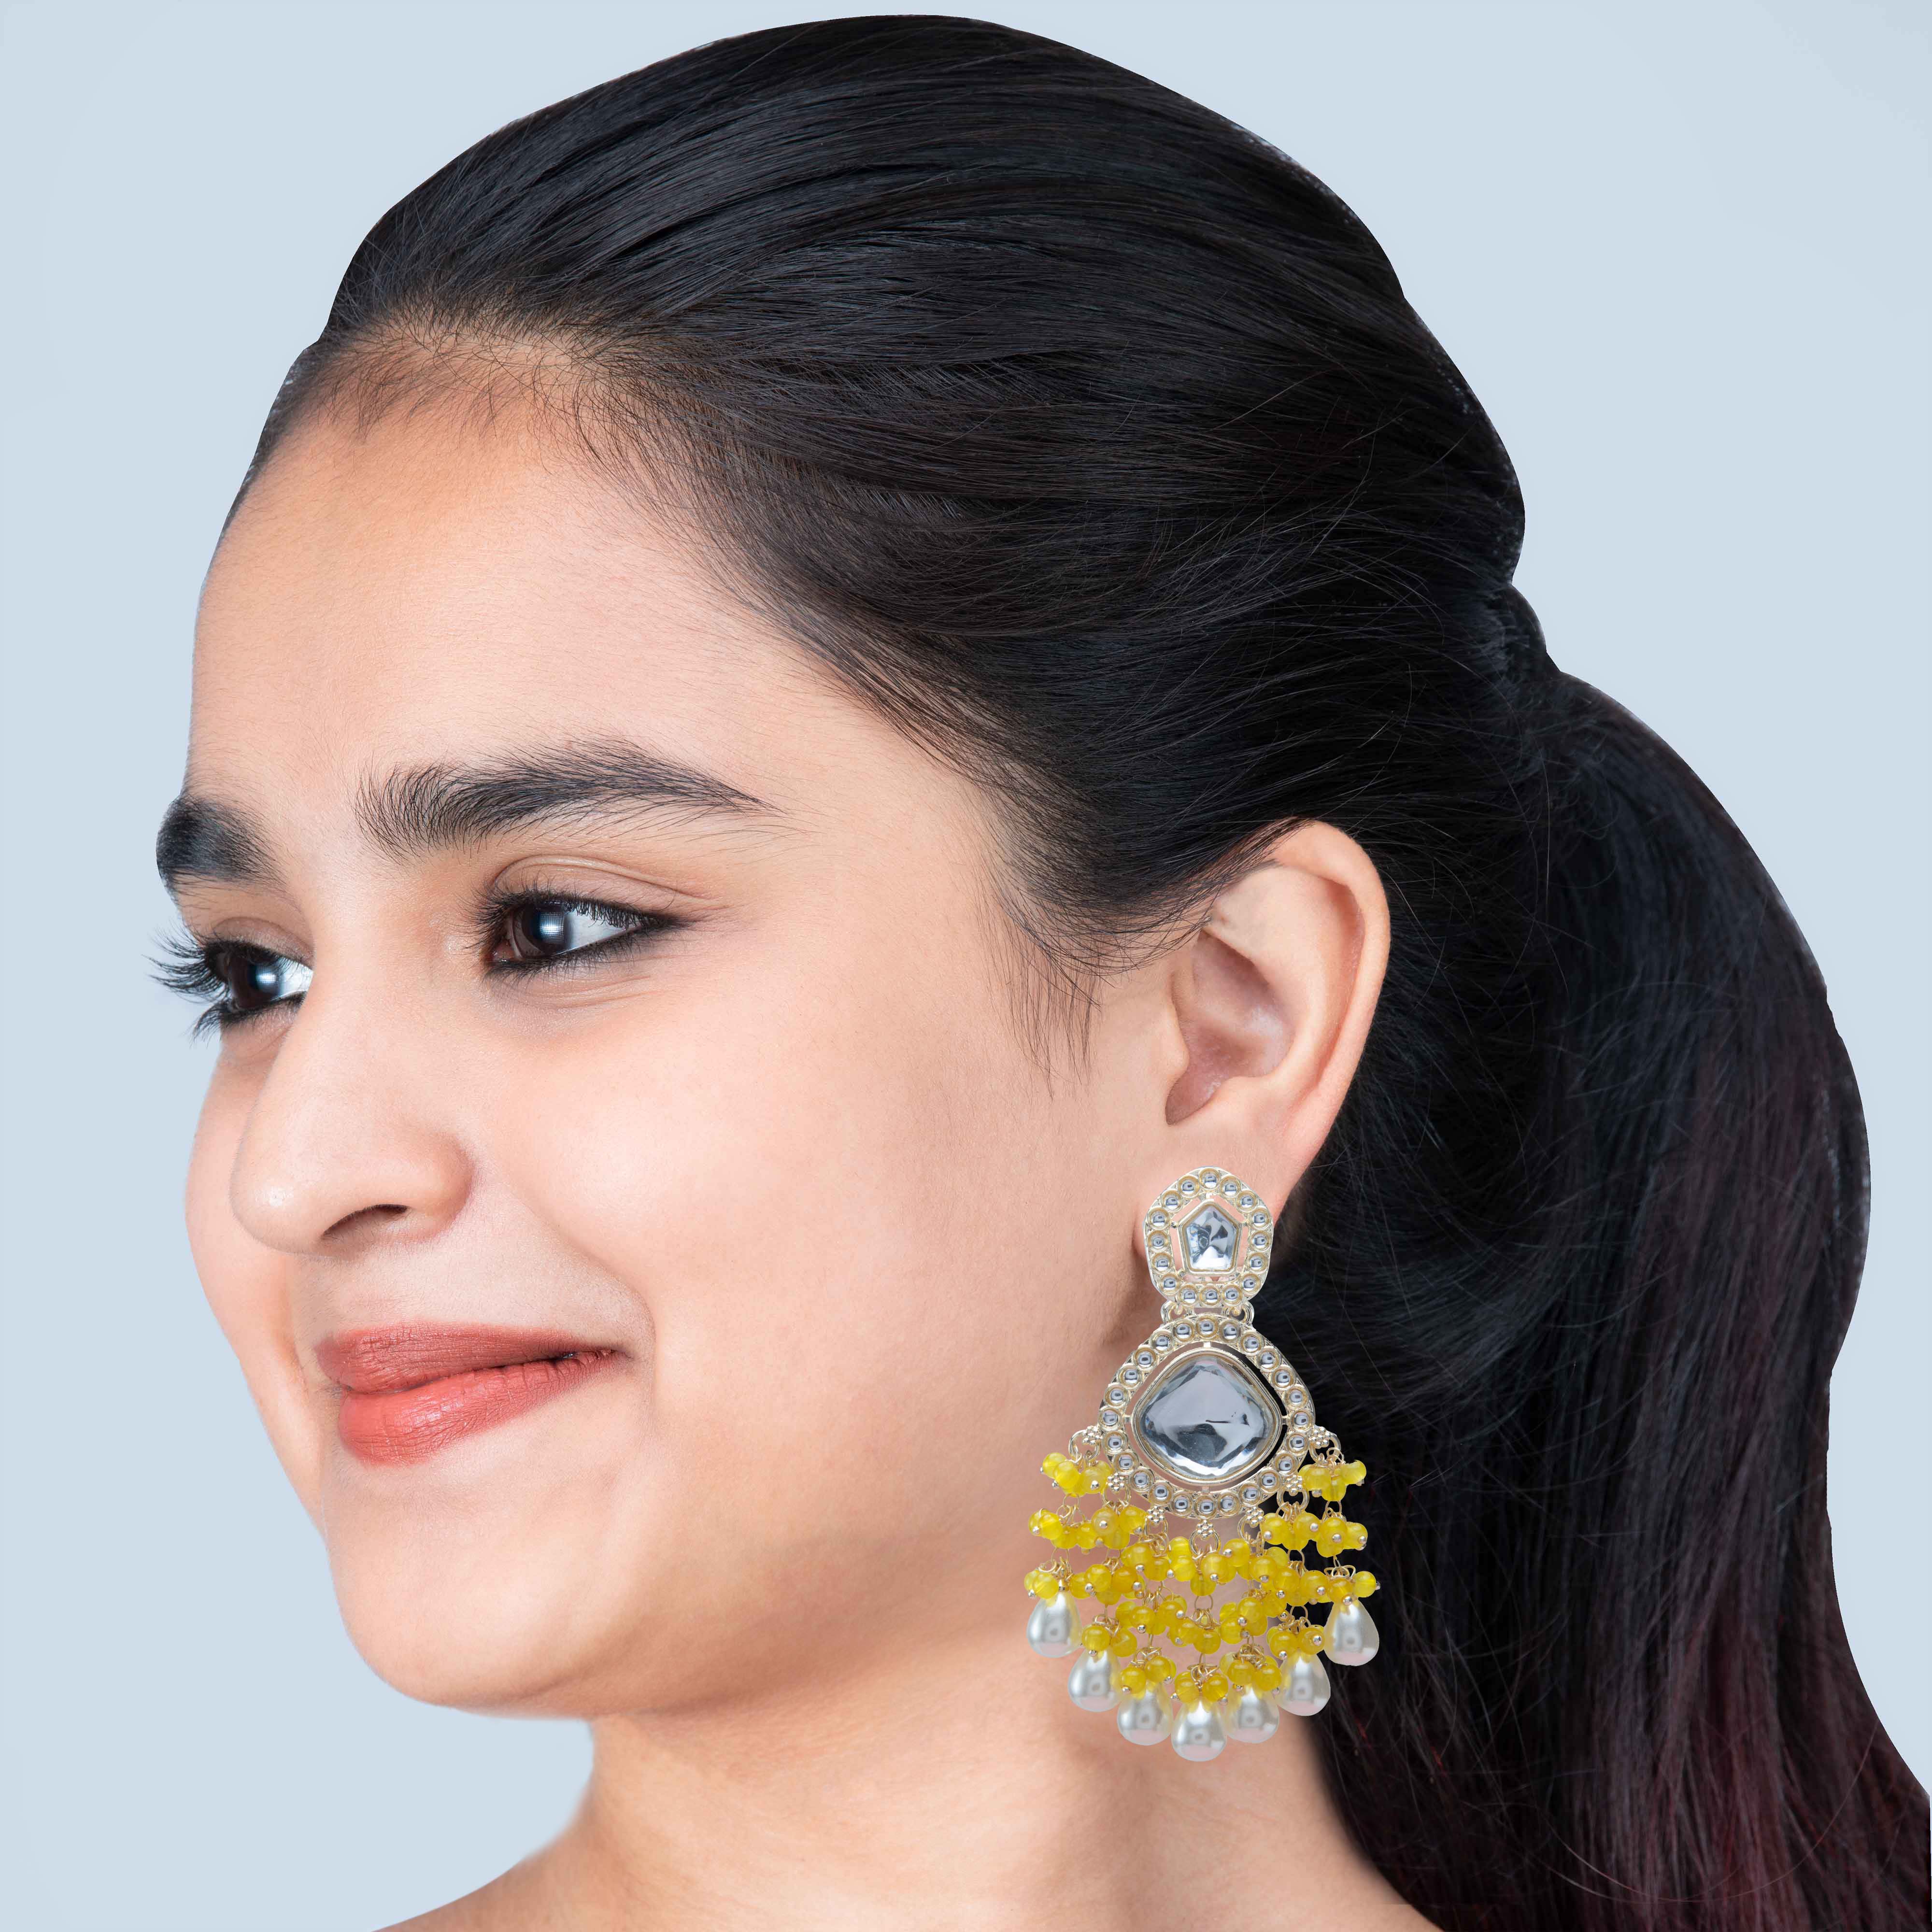 Alloy Dangle Beautiful Multi Color Kundan Earrings For Girls/Women (KDE427)  at Rs 333/pair in Jaipur